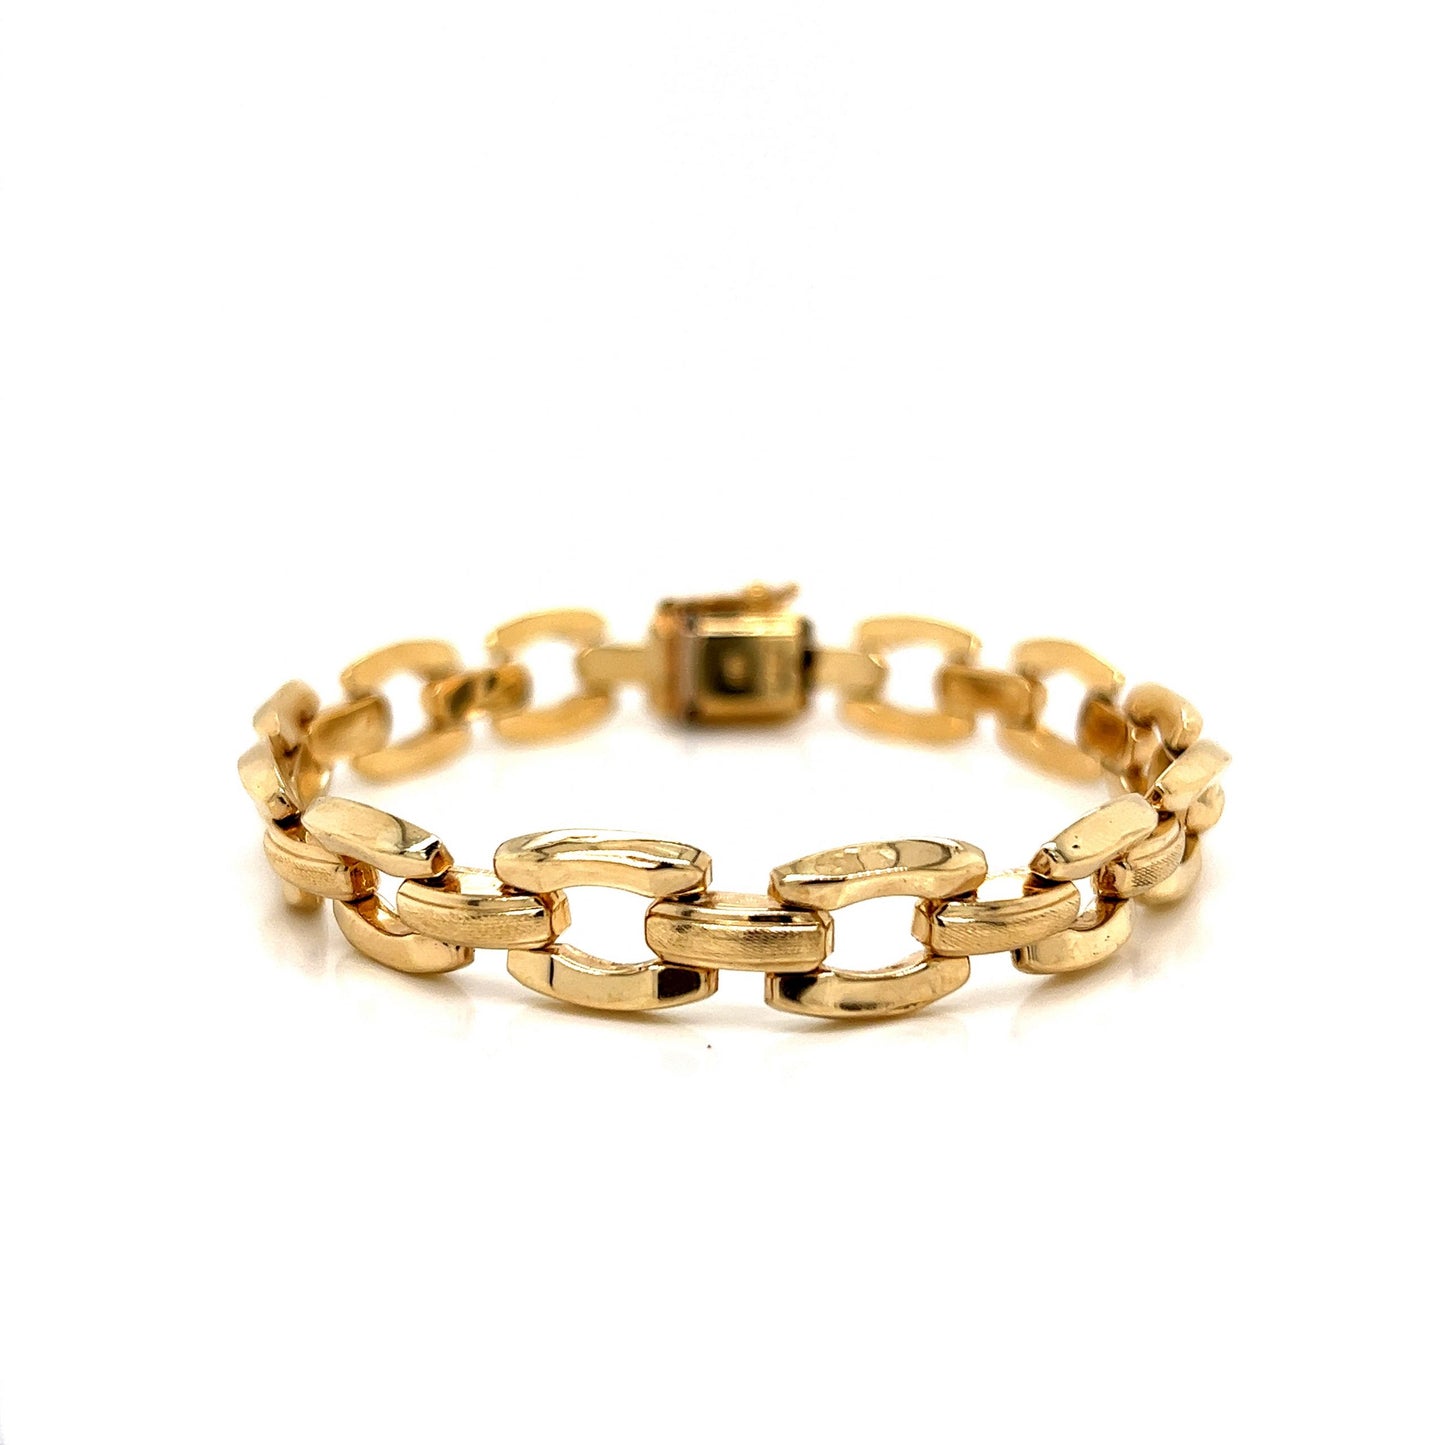 Modern Open Link Chain Bracelet in 14k Yellow Gold